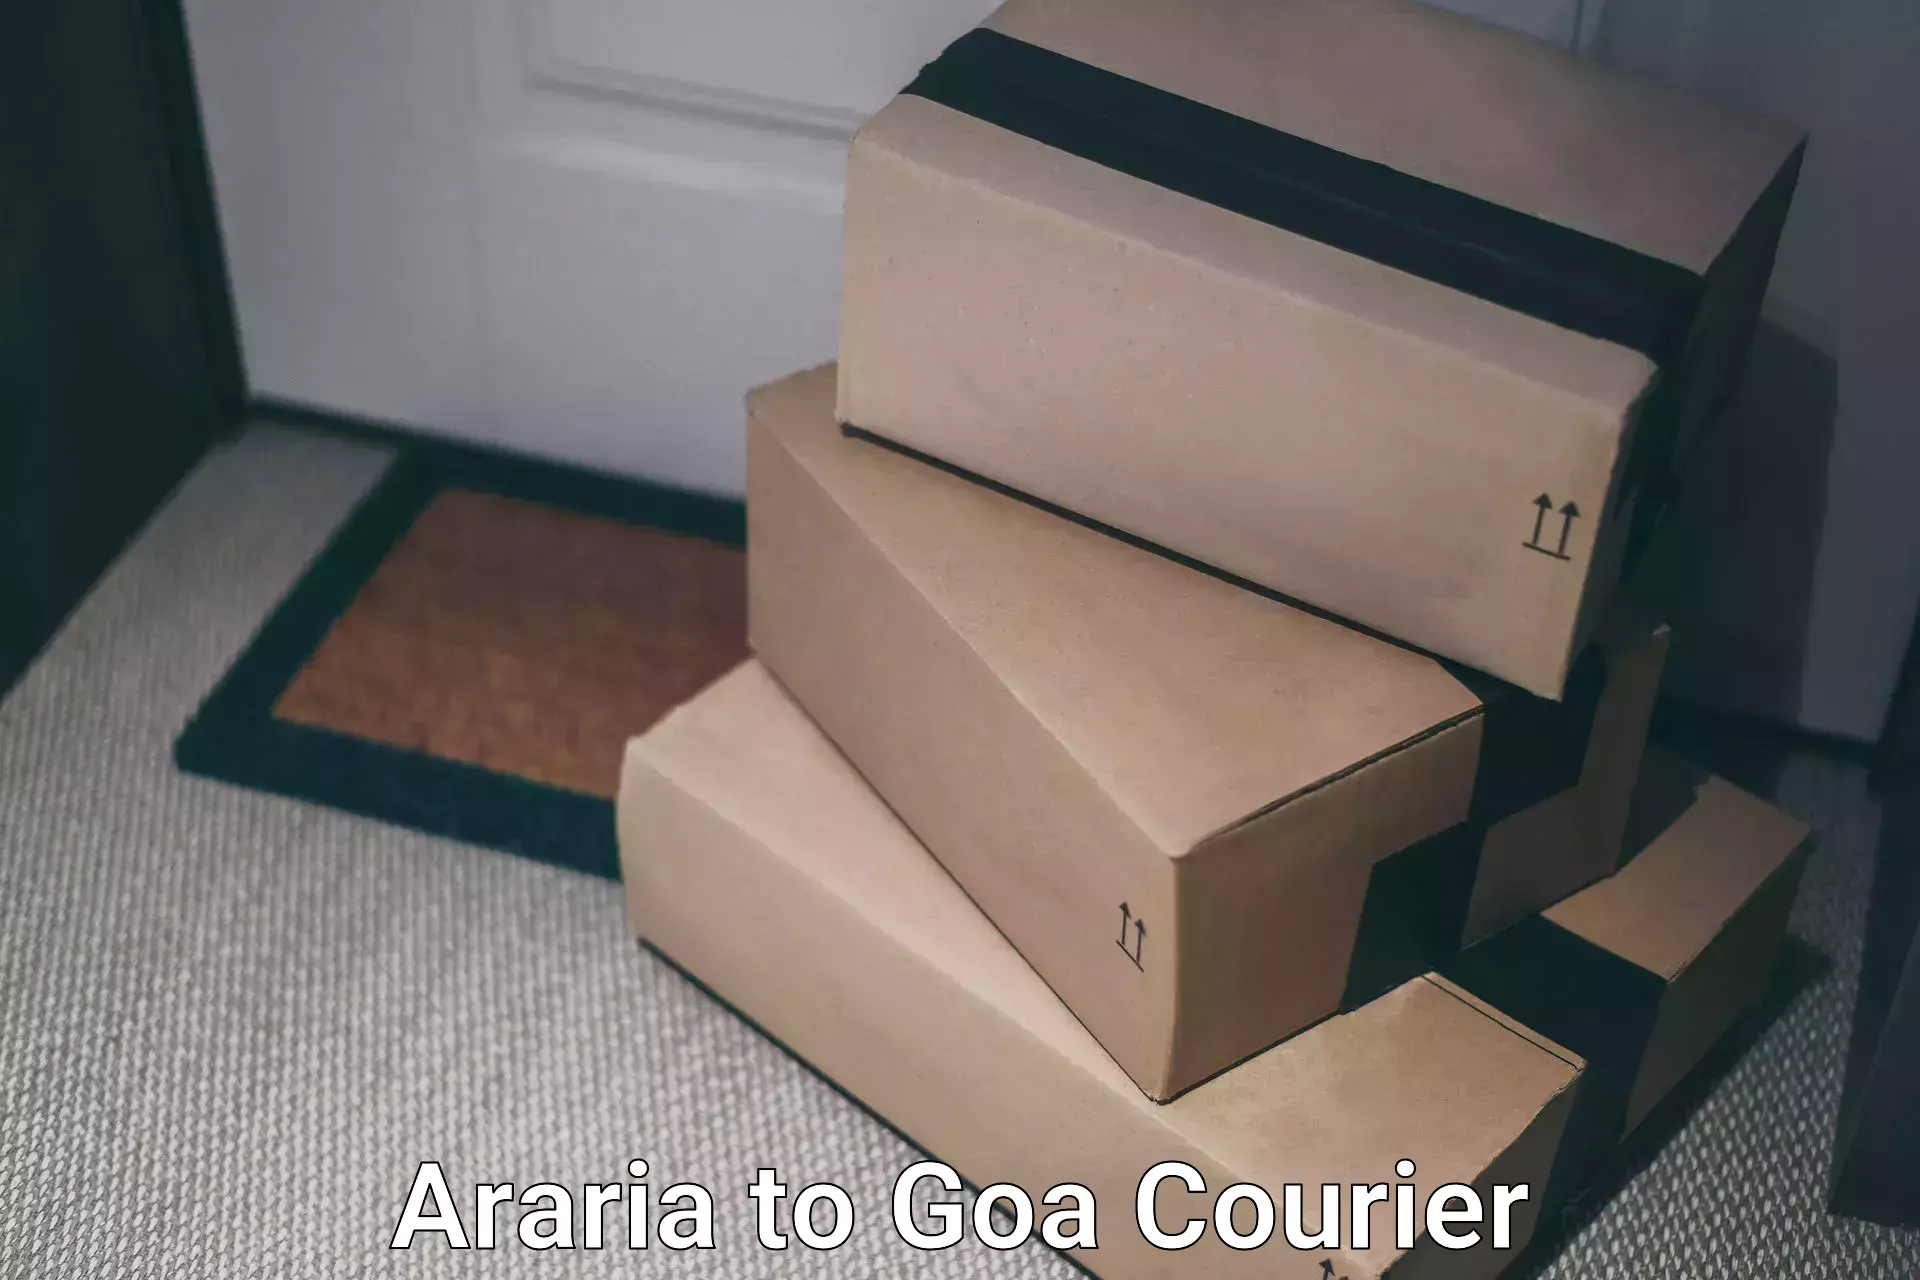 Professional courier handling Araria to Vasco da Gama